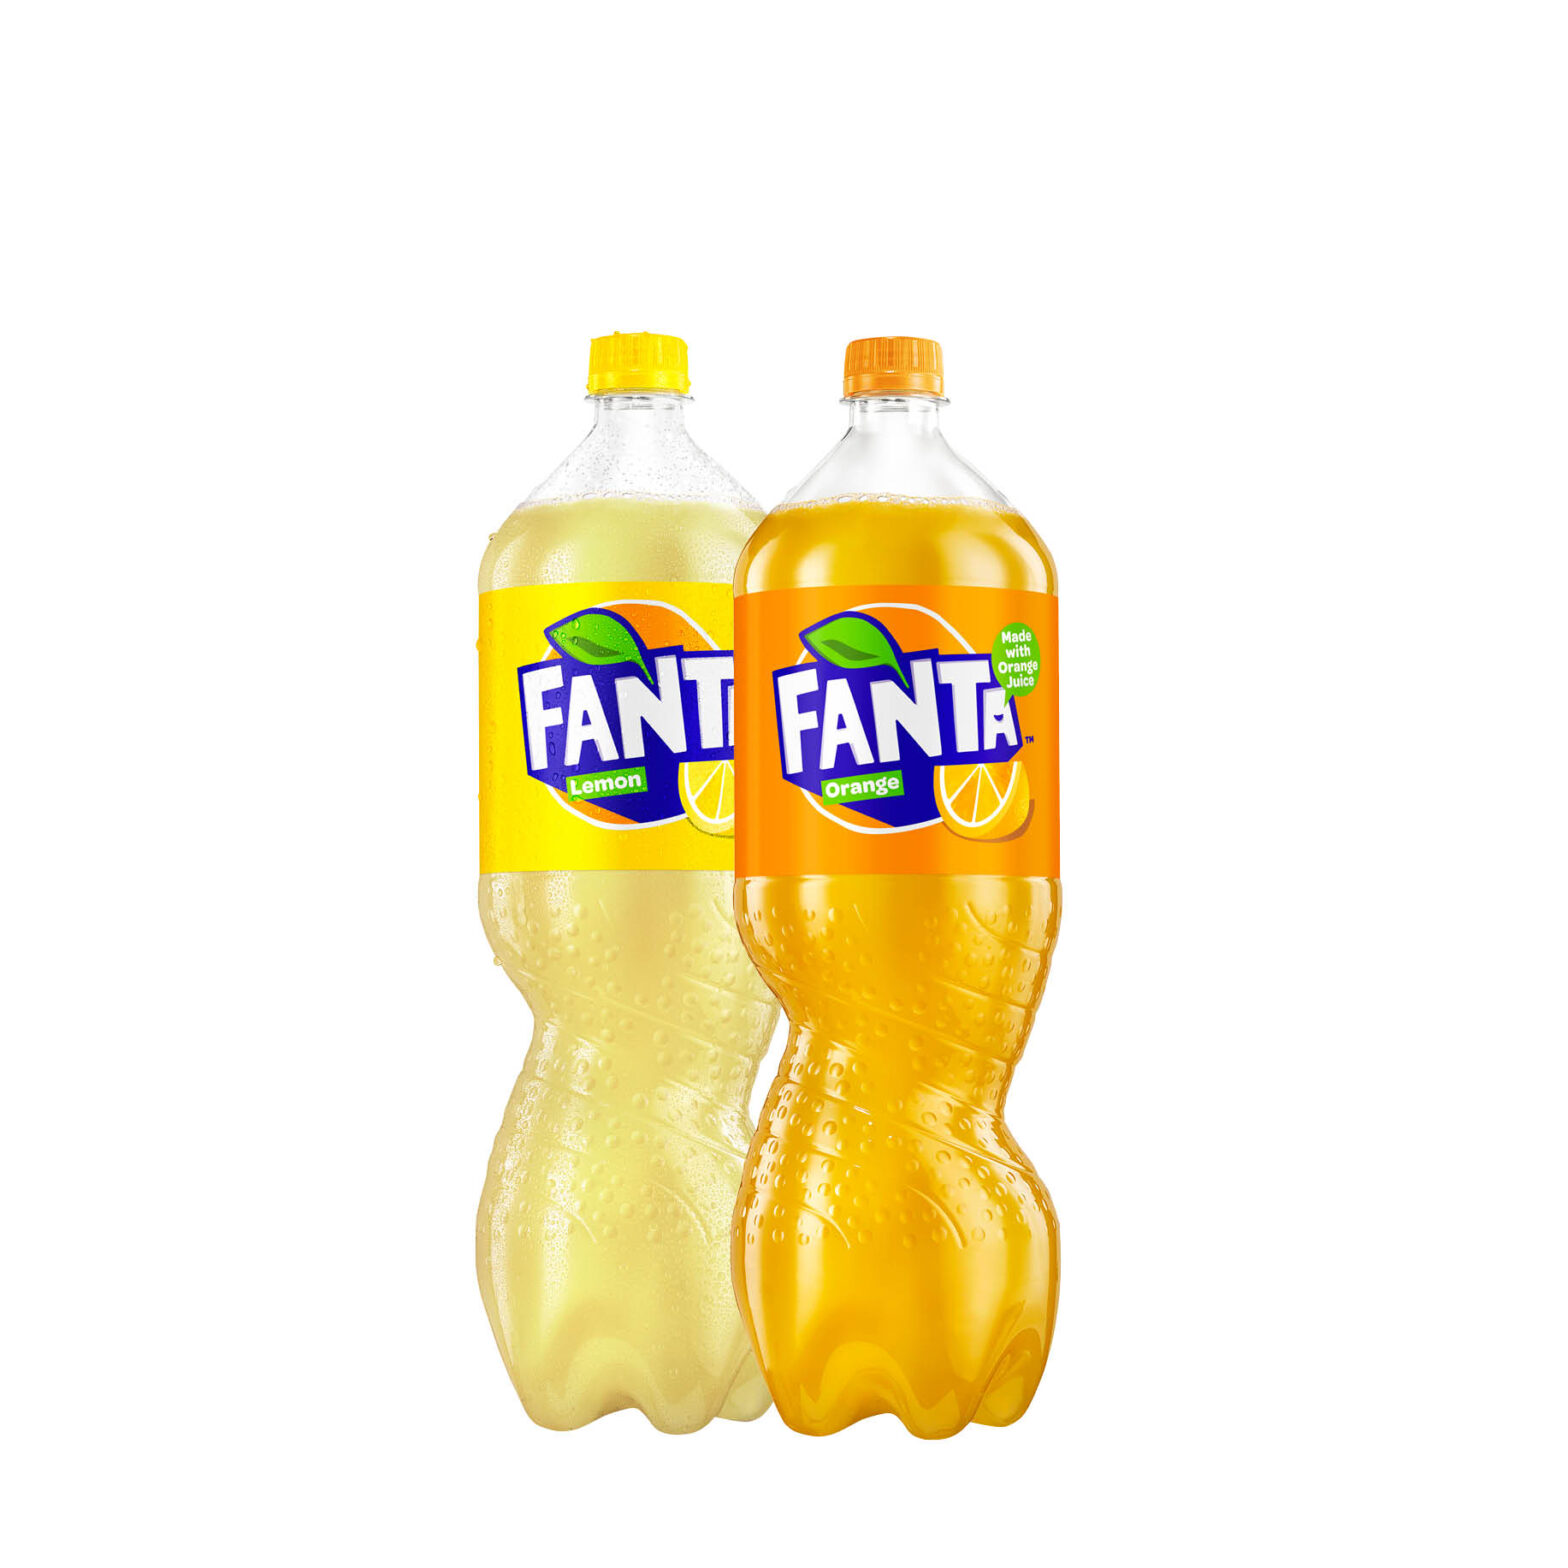 Fanta Lemon Bottle / Fanta Orange Bottle